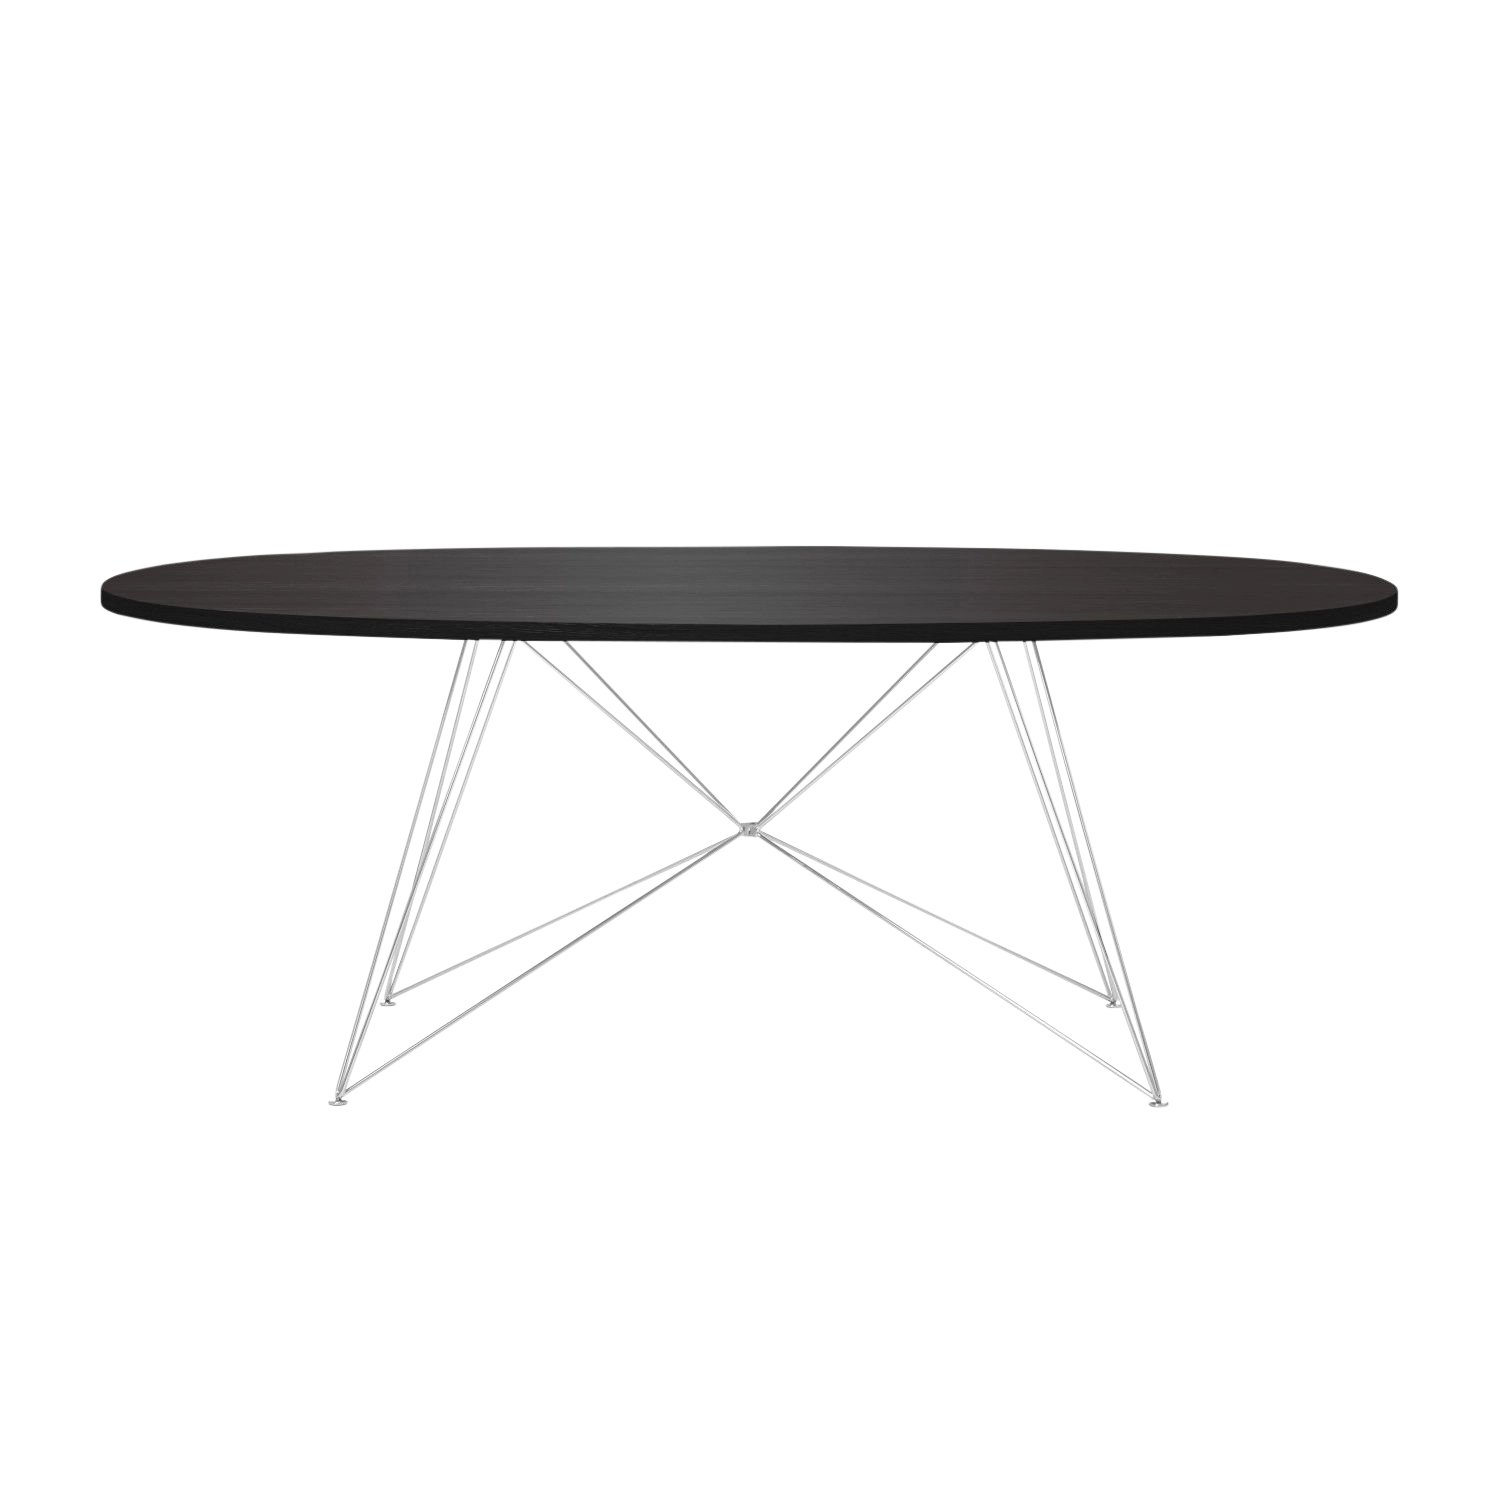 XZ3 Ovaltisch, Tischplatte mdf, eichenfurnier dunkel, Gestell weiss lackiert von Magis Spa